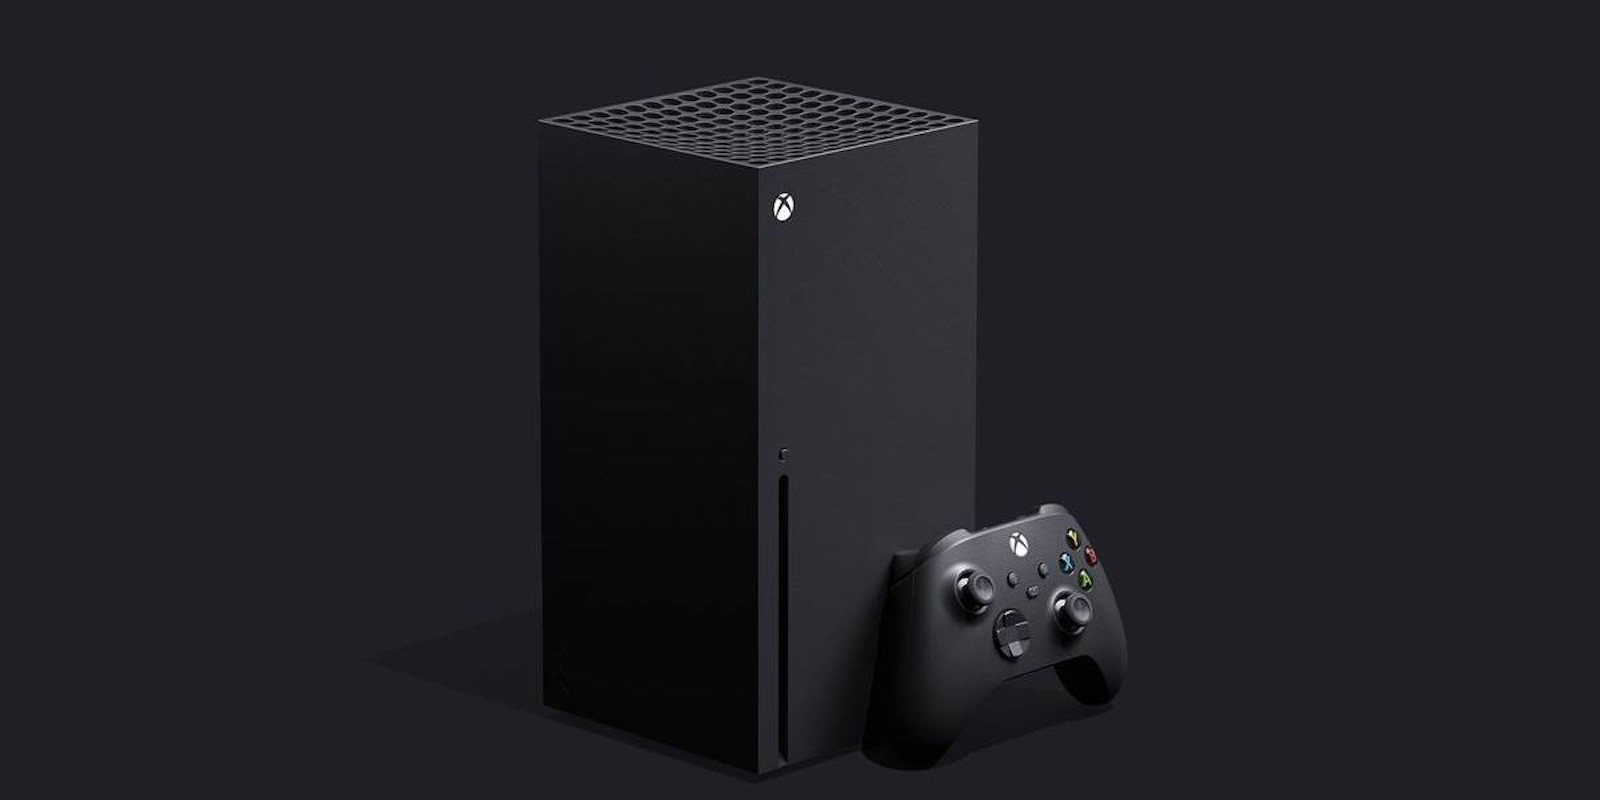 Comparan el tamaño de Xbox Serie X en una imagen con las otras plataformas